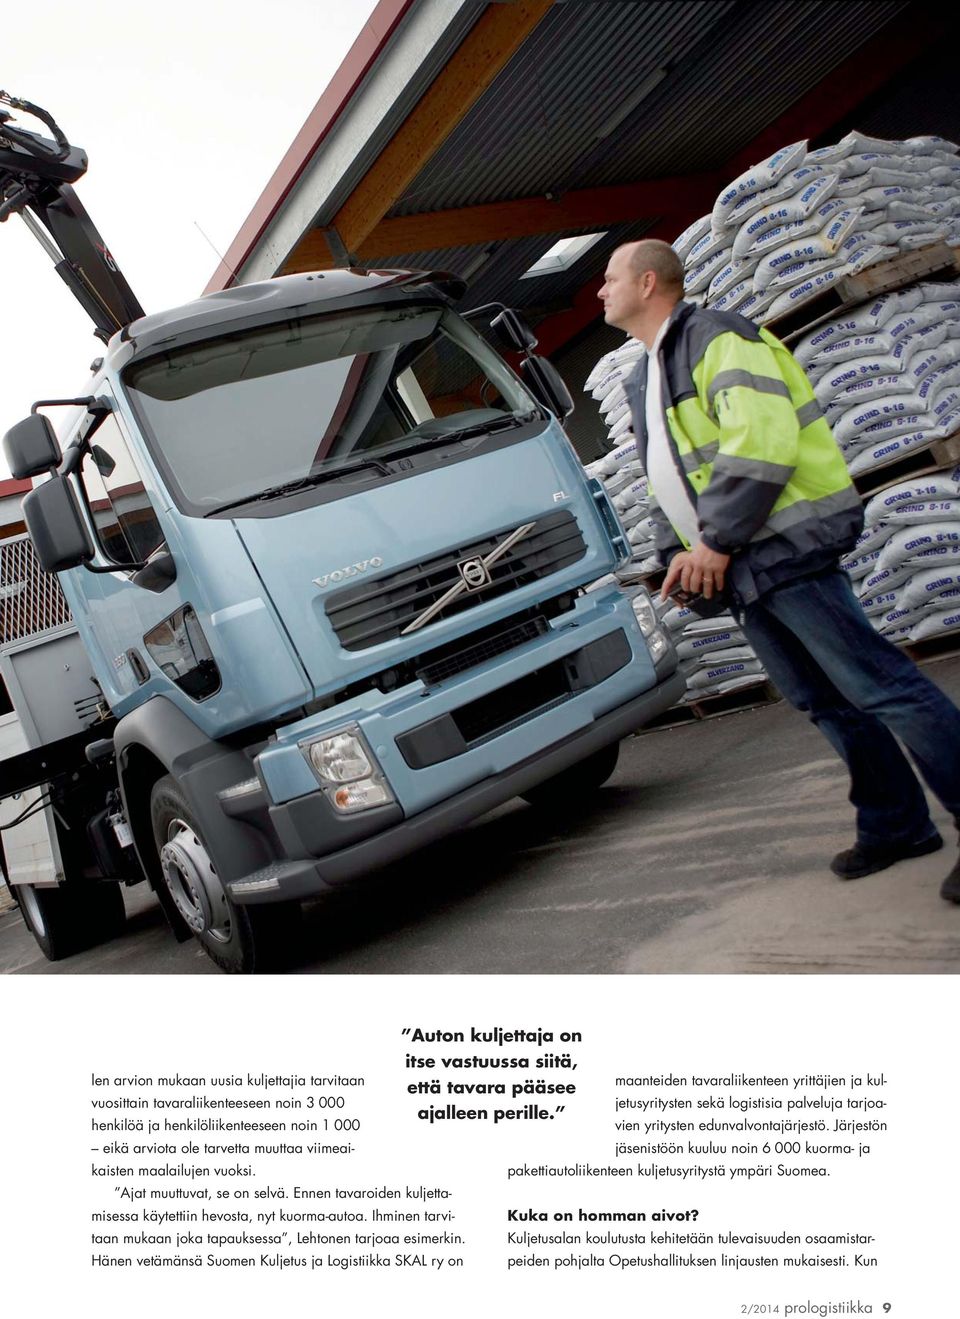 Hänen vetämänsä Suomen Kuljetus ja Logistiikka SKAL ry on Auton kuljettaja on itse vastuussa siitä, maanteiden tavaraliikenteen yrittäjien ja kuljetusyritysten sekä logistisia palveluja tarjoa- että